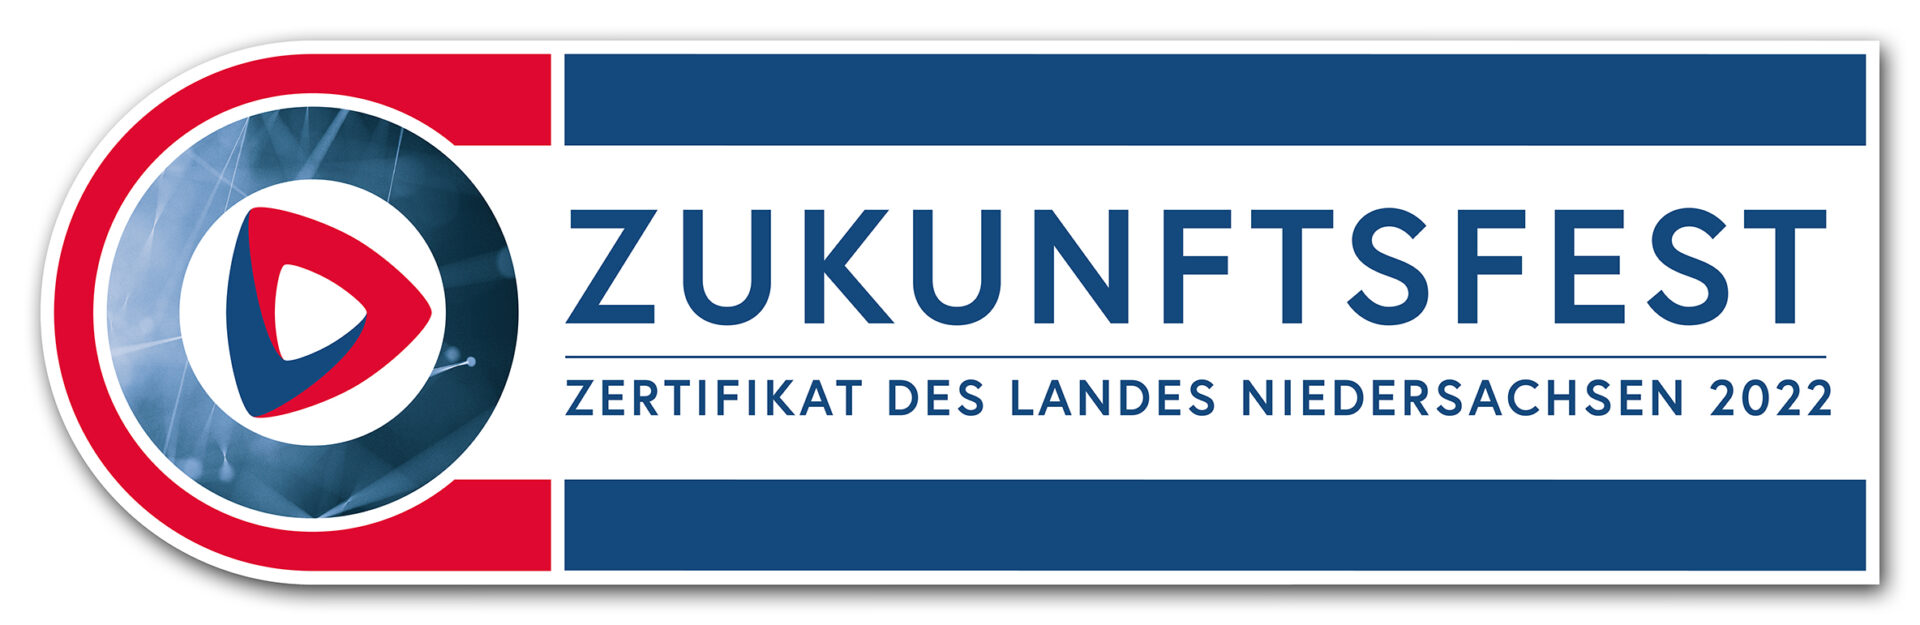 Logo Zukunftsfest Zertifikat 2022